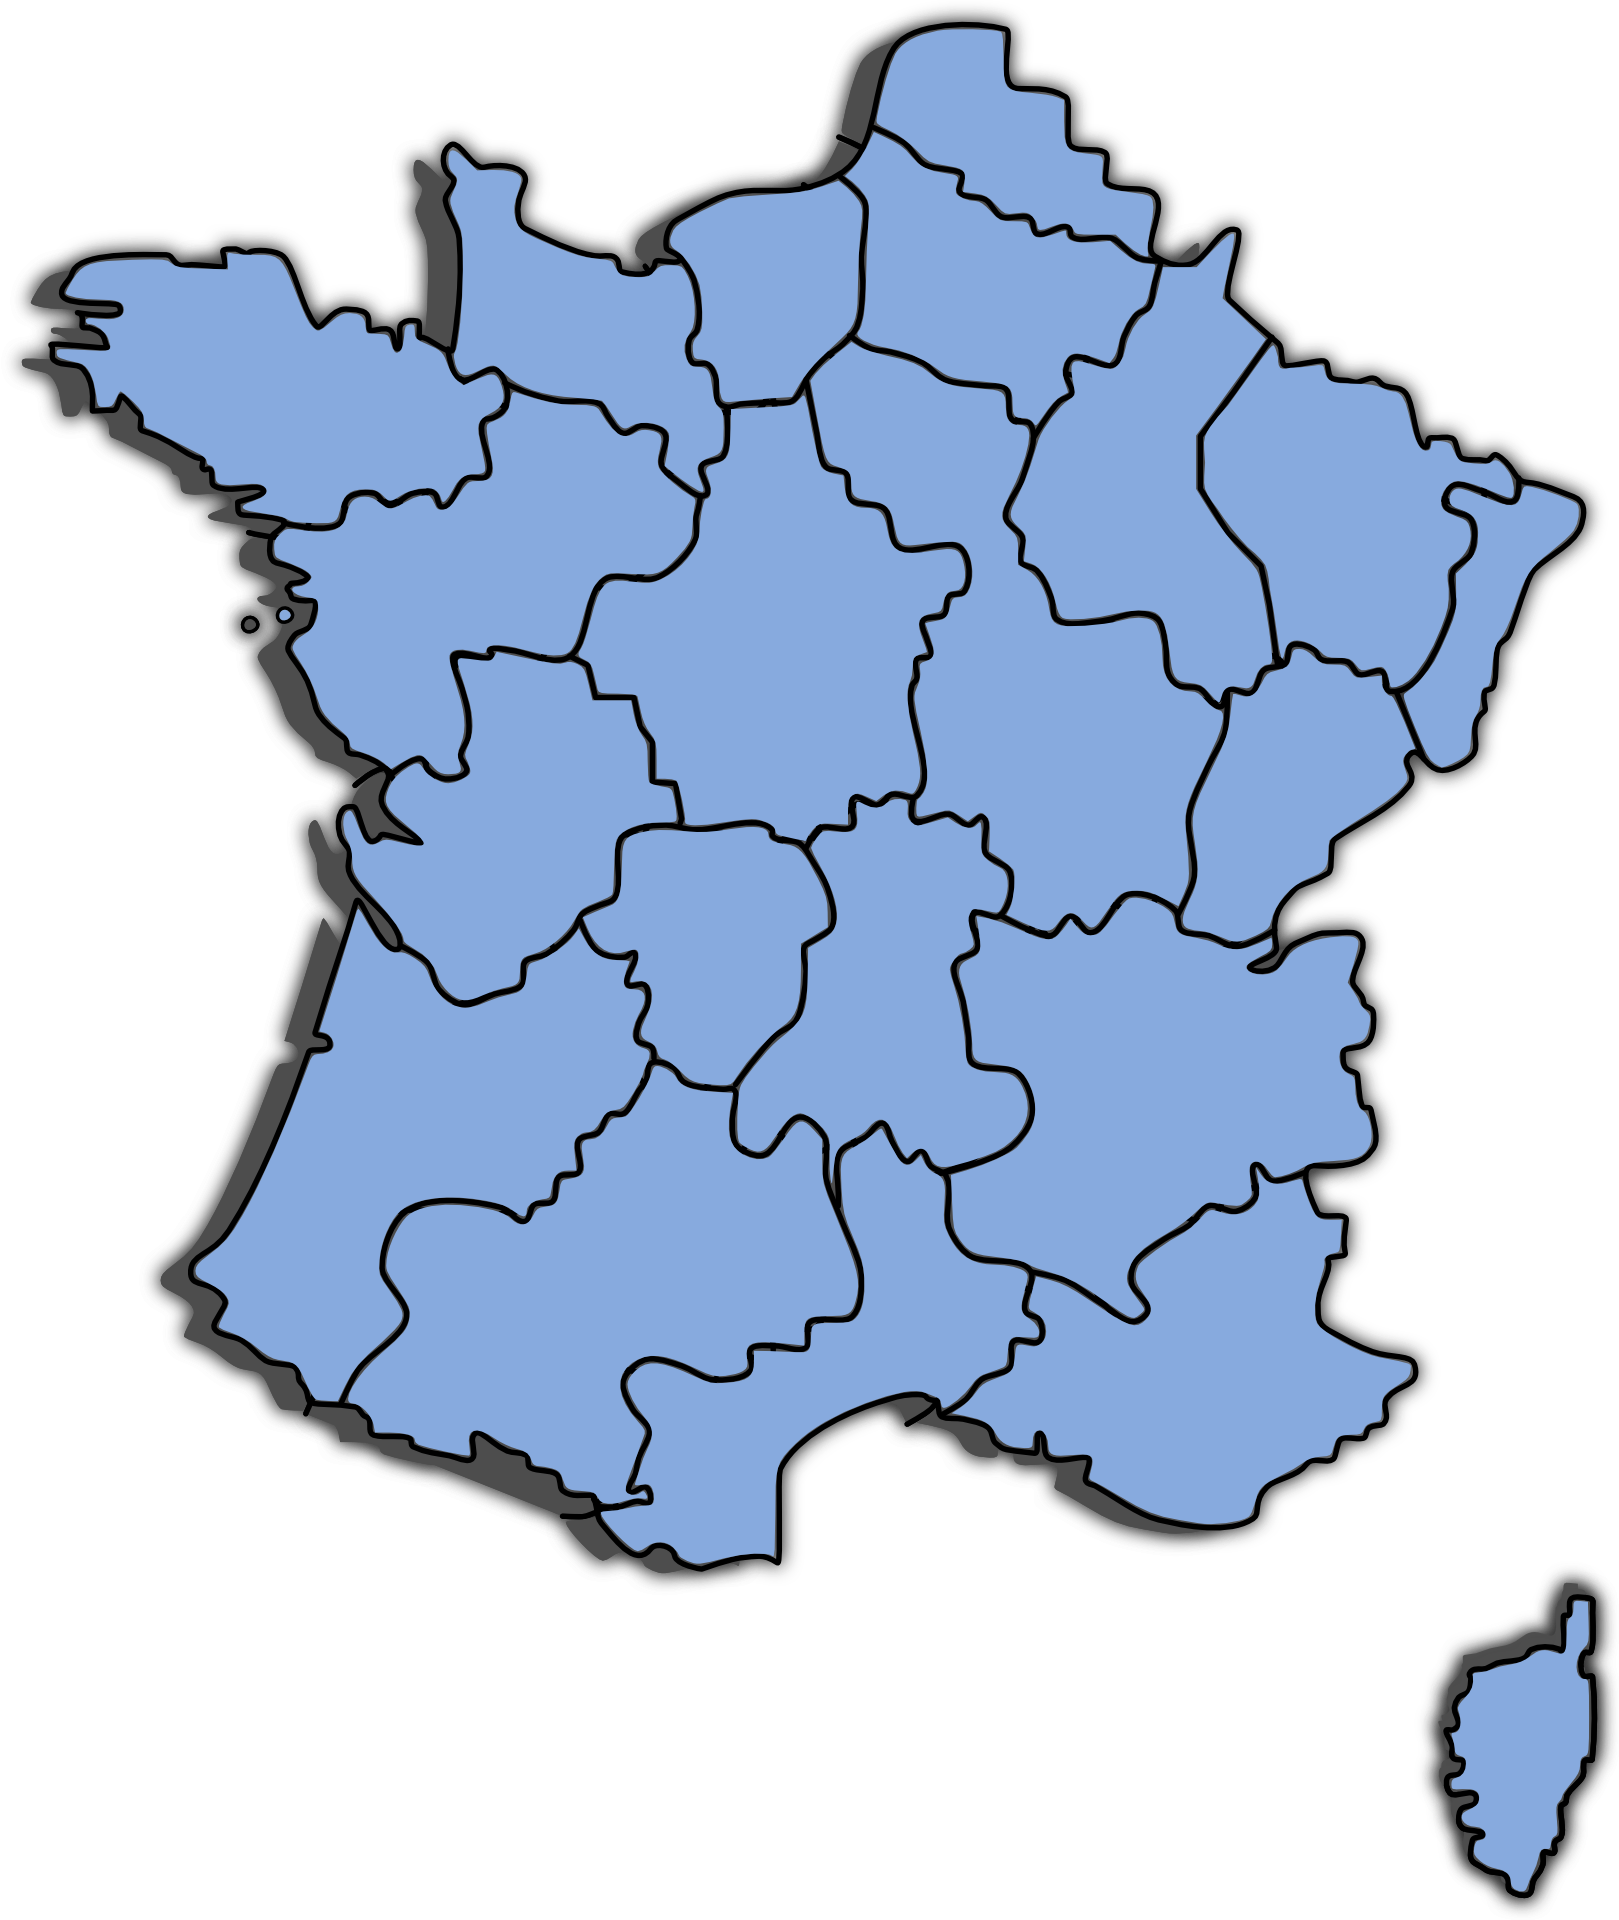 Peta Perancis